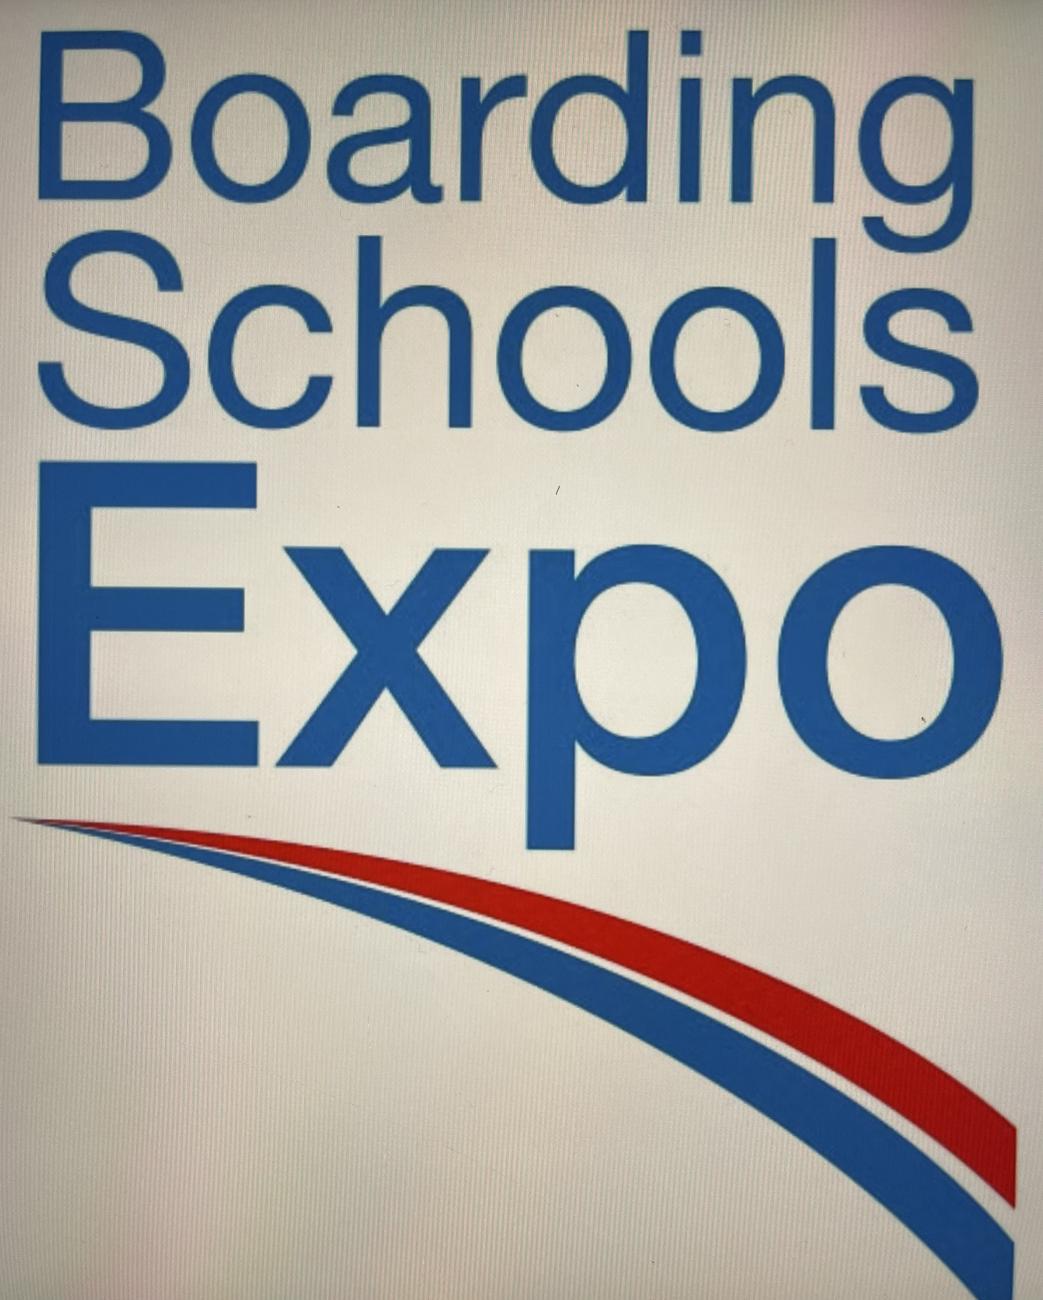 Expo Logo